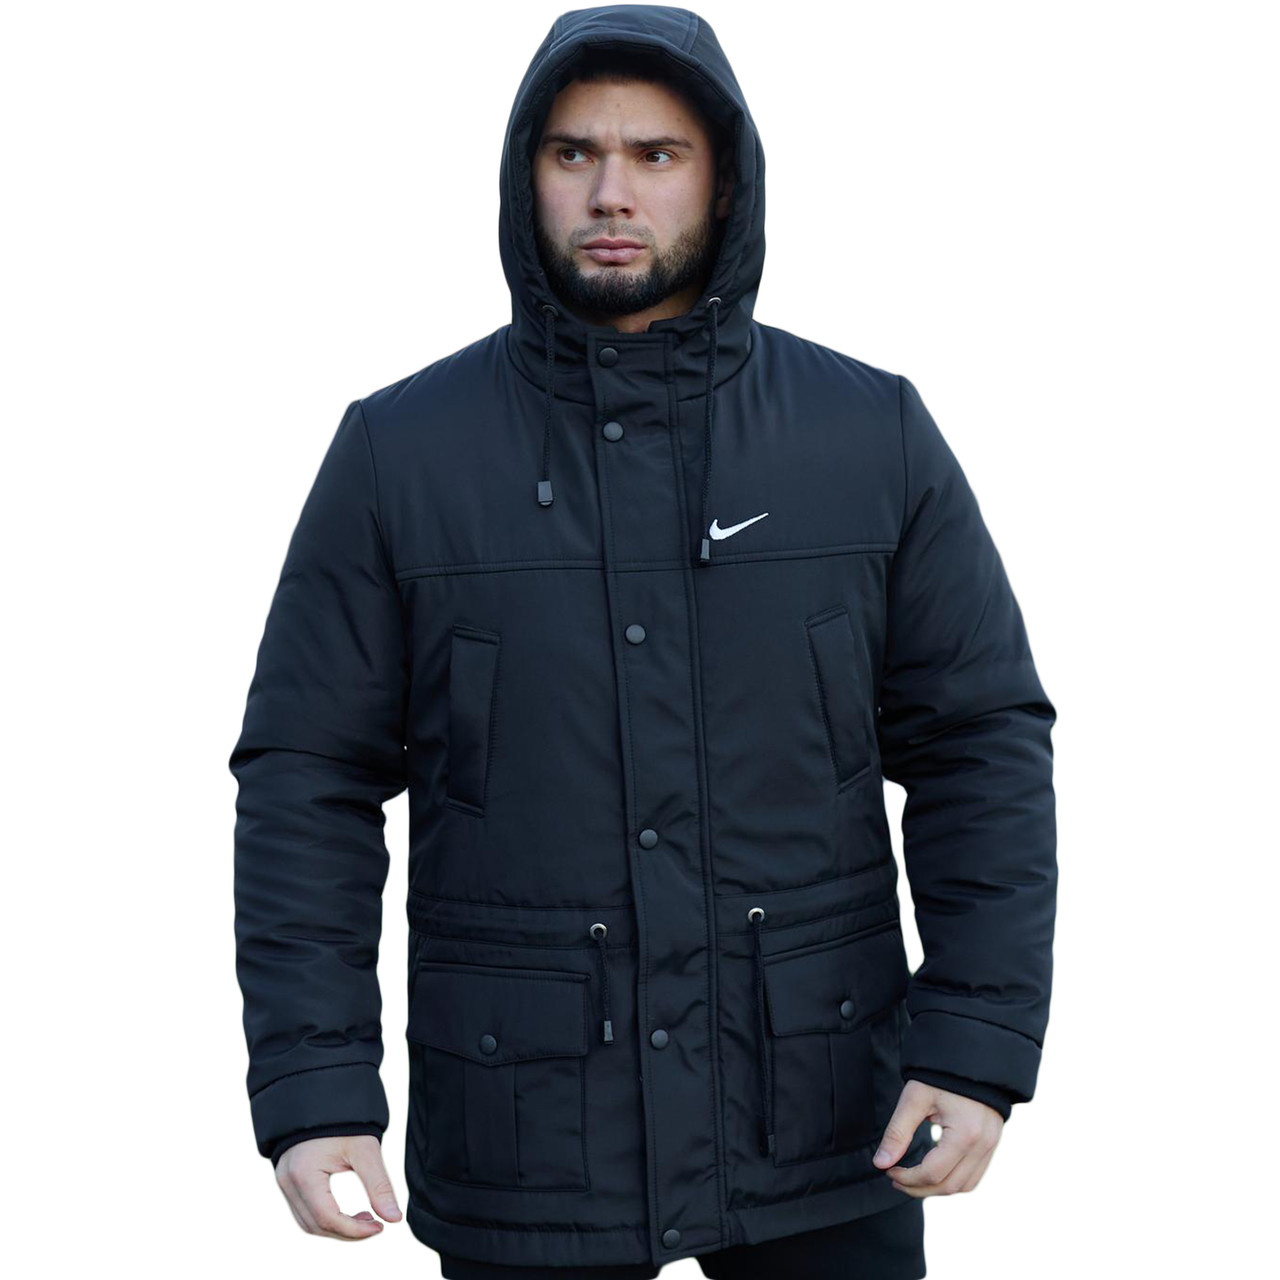 Чоловіча зимова парка Nike/Утеплена чорна куртка на зиму/Довжинна водовідштовхувальна курточка з капюшоном